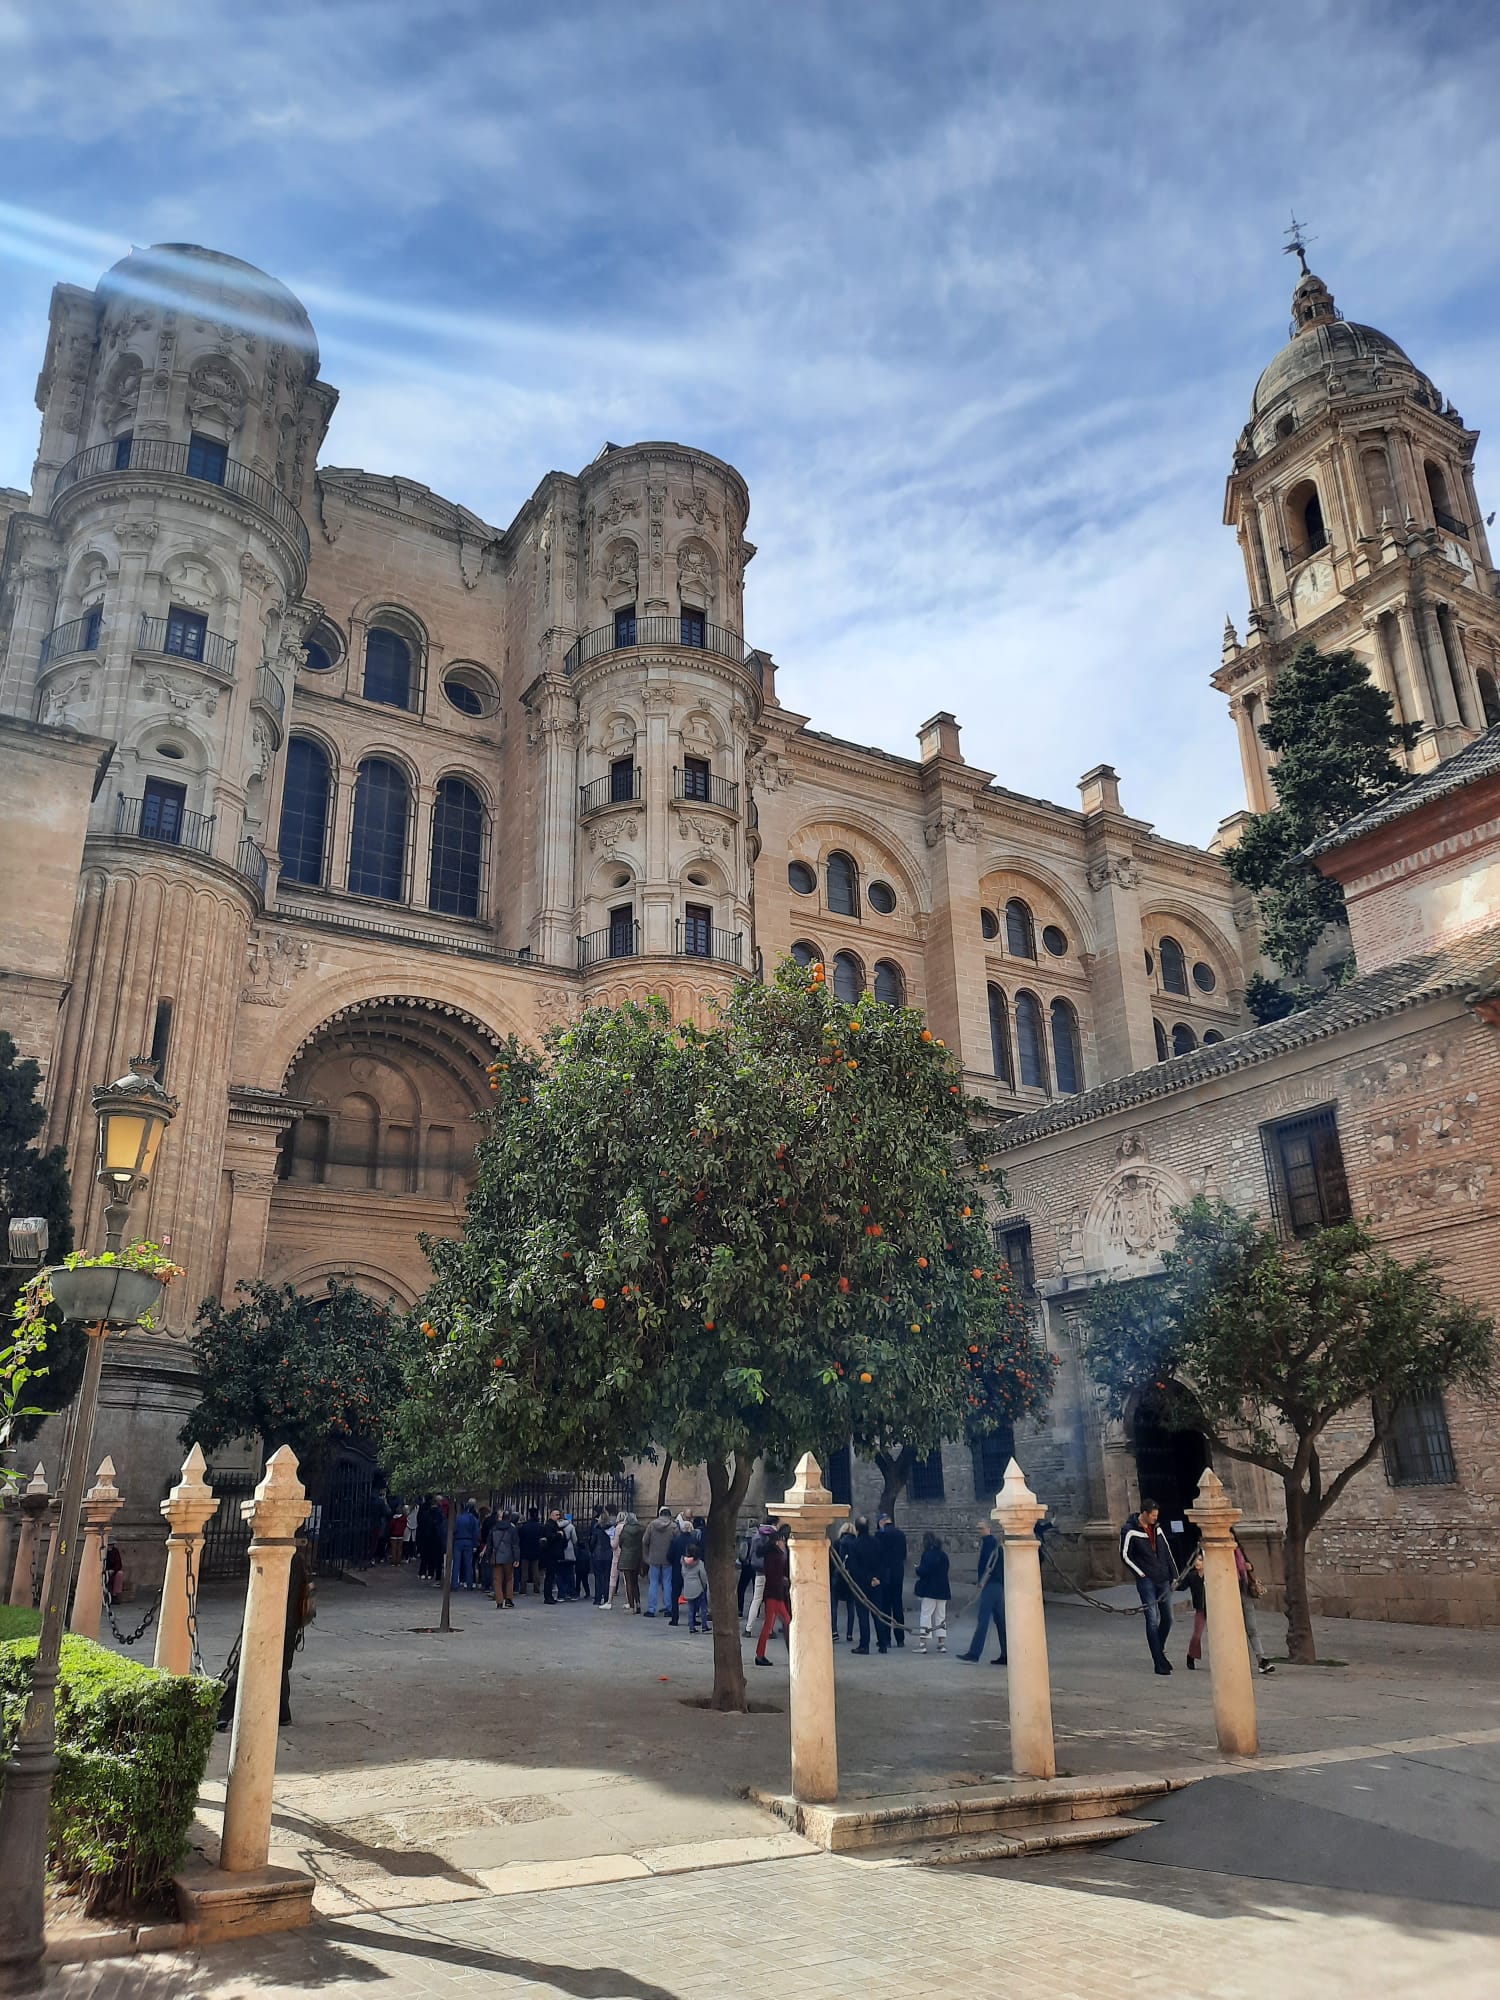 マラガ大聖堂 | 写真 マラガ大聖堂スペイン南部のキャンピングカーのヒントと名所